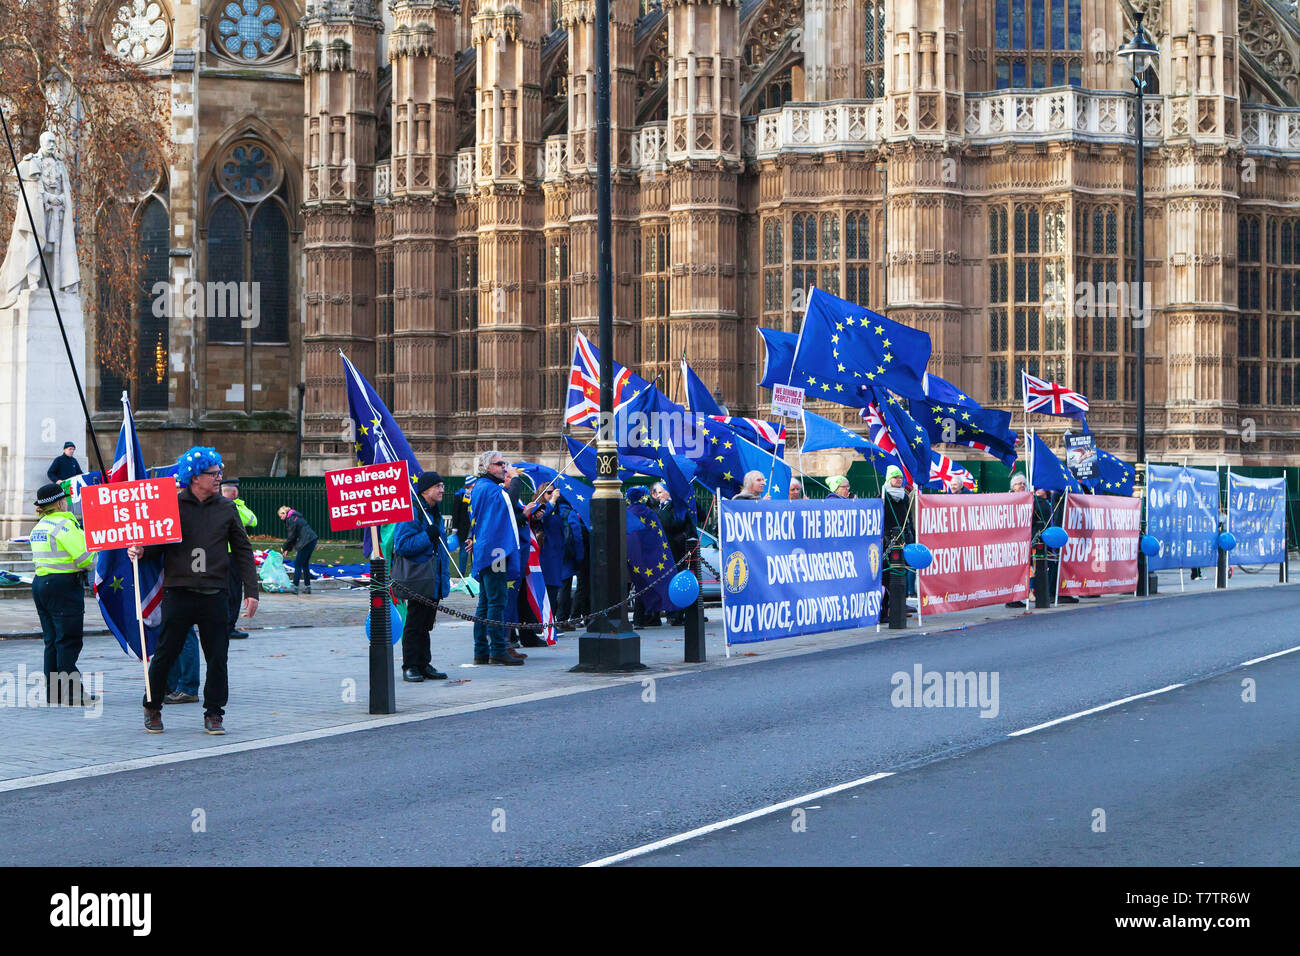 Londres, Reino Unido - 19 de diciembre de 2018: los manifestantes contra Brexit sostener pancartas y banderas de la Unión Europea en frente de las Casas del Parlamento o Foto de stock